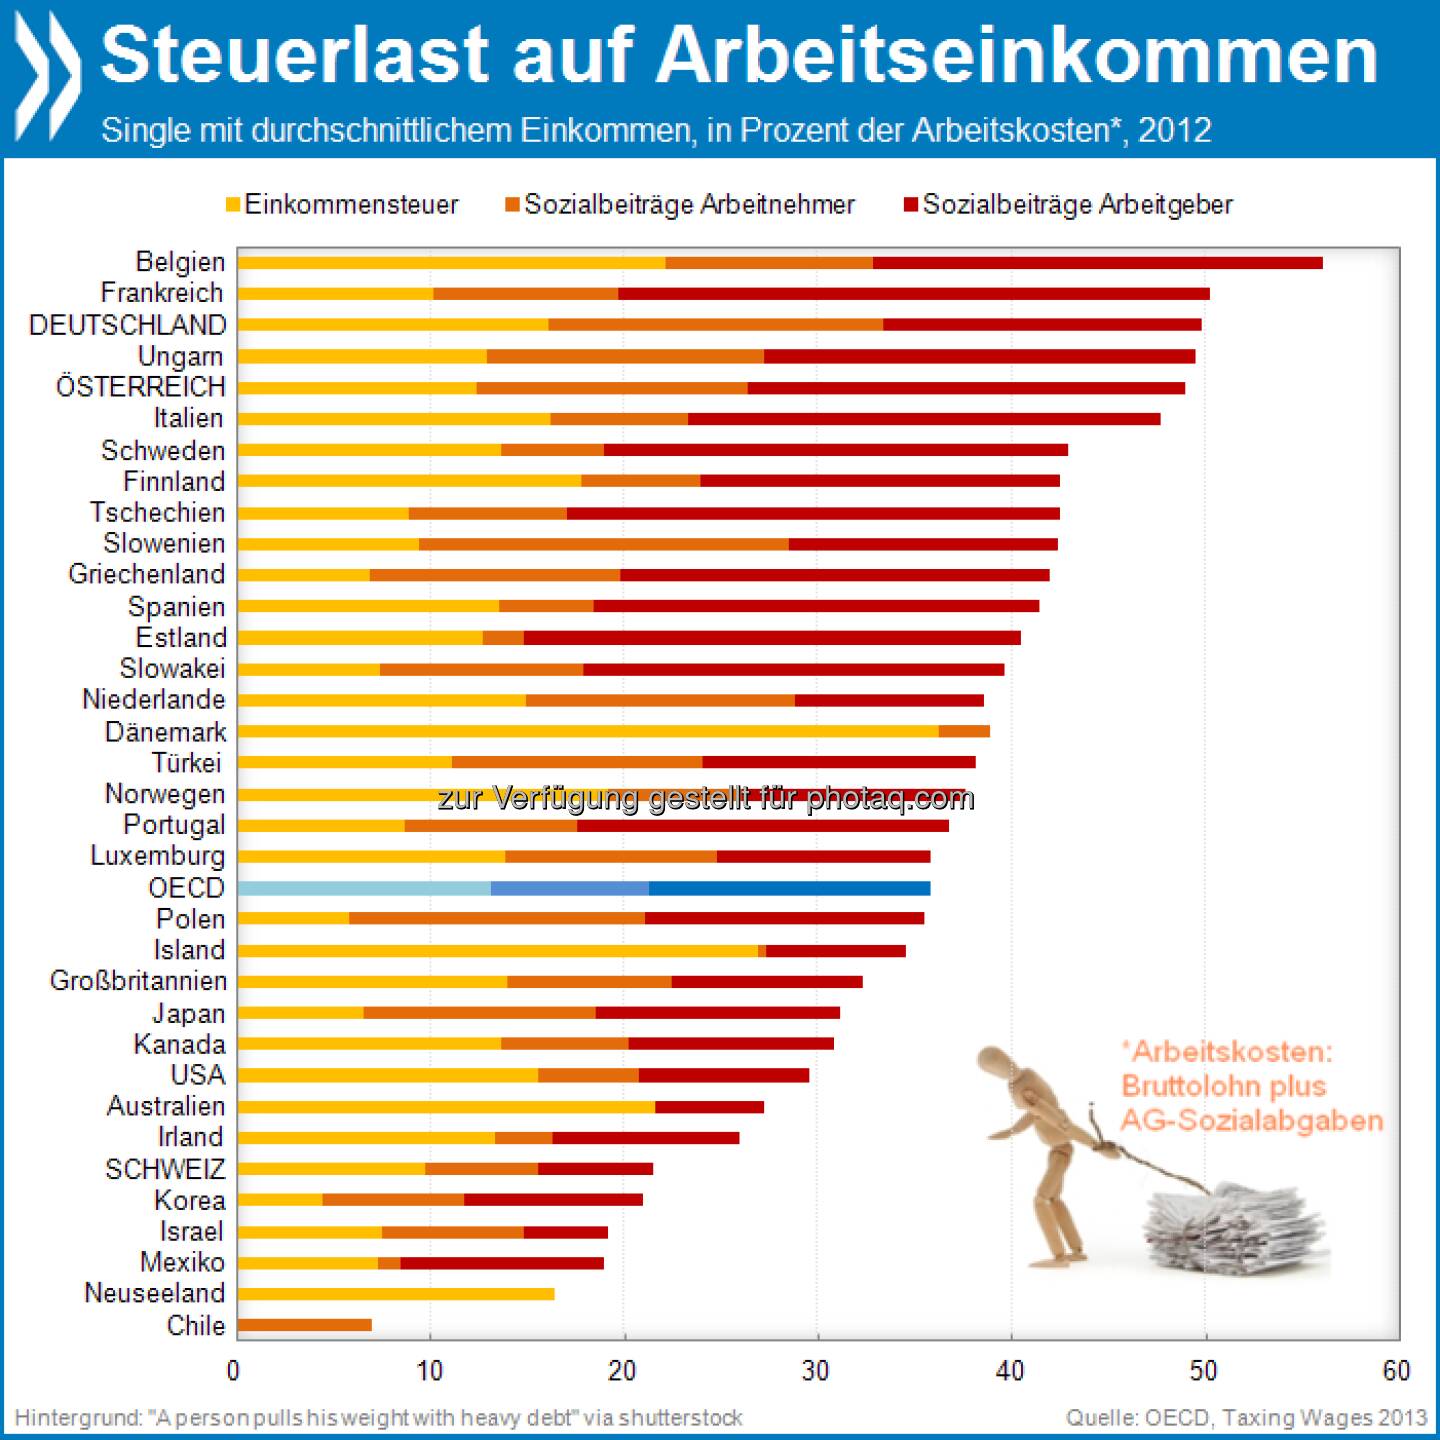 Spitzenreiter: In Deutschland liegen Steuern und Abgaben für einen Single mit durchschnittlichem Einkommen bei 49,7 Prozent der Arbeitskosten. Nur in Belgien und Frankreich ist die Abgabenlast noch höher. 

Mehr unter http://bit.ly/16HKcUc (OECD Interactive Charts - Steuerlast auf Arbeitseinkommen)